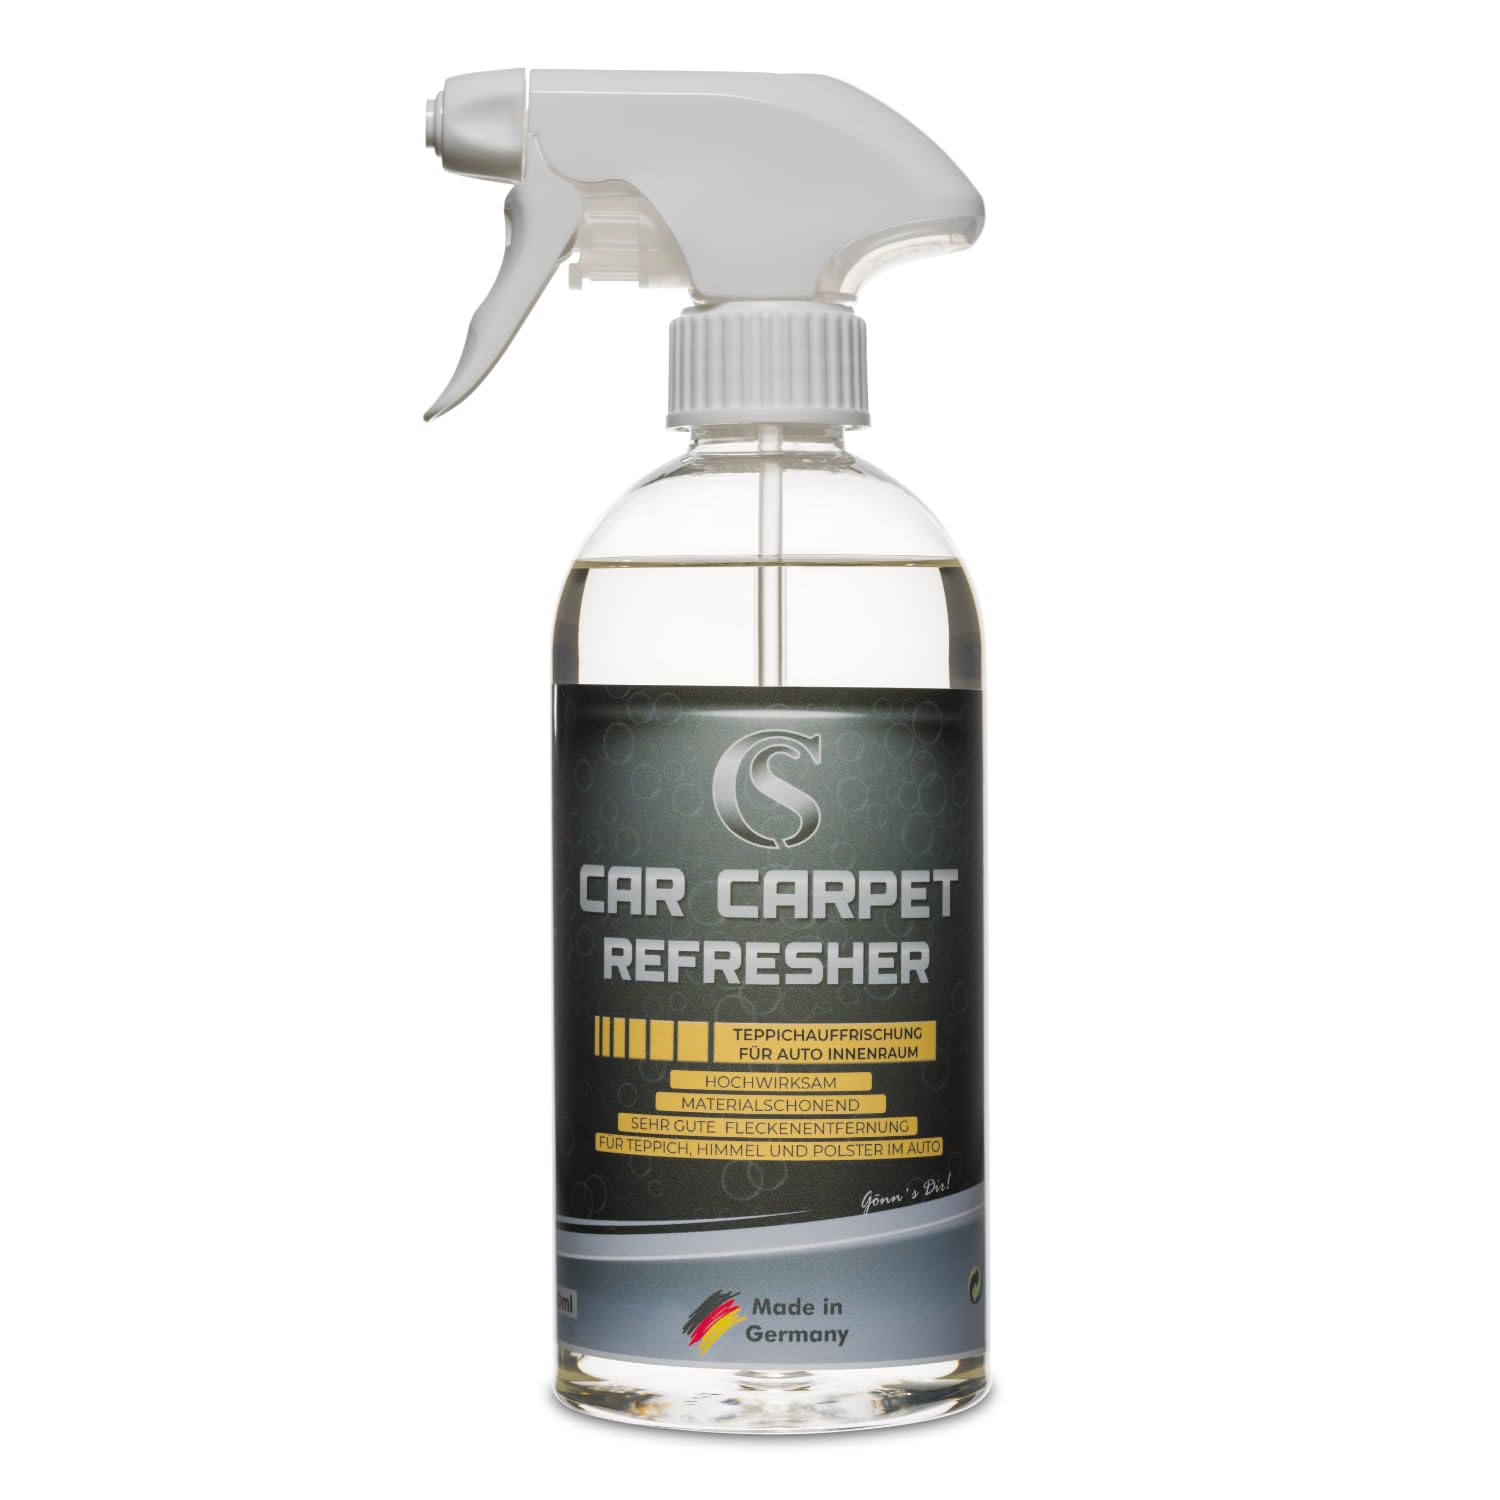 Car Sense Car Carpet Refresher - Polsterreinigung für Autoinnenraum [500ml] - Teppichreiniger Auto, Fleckenentferner für Teppich, Hochwirksam & materialschonend von Car Sense